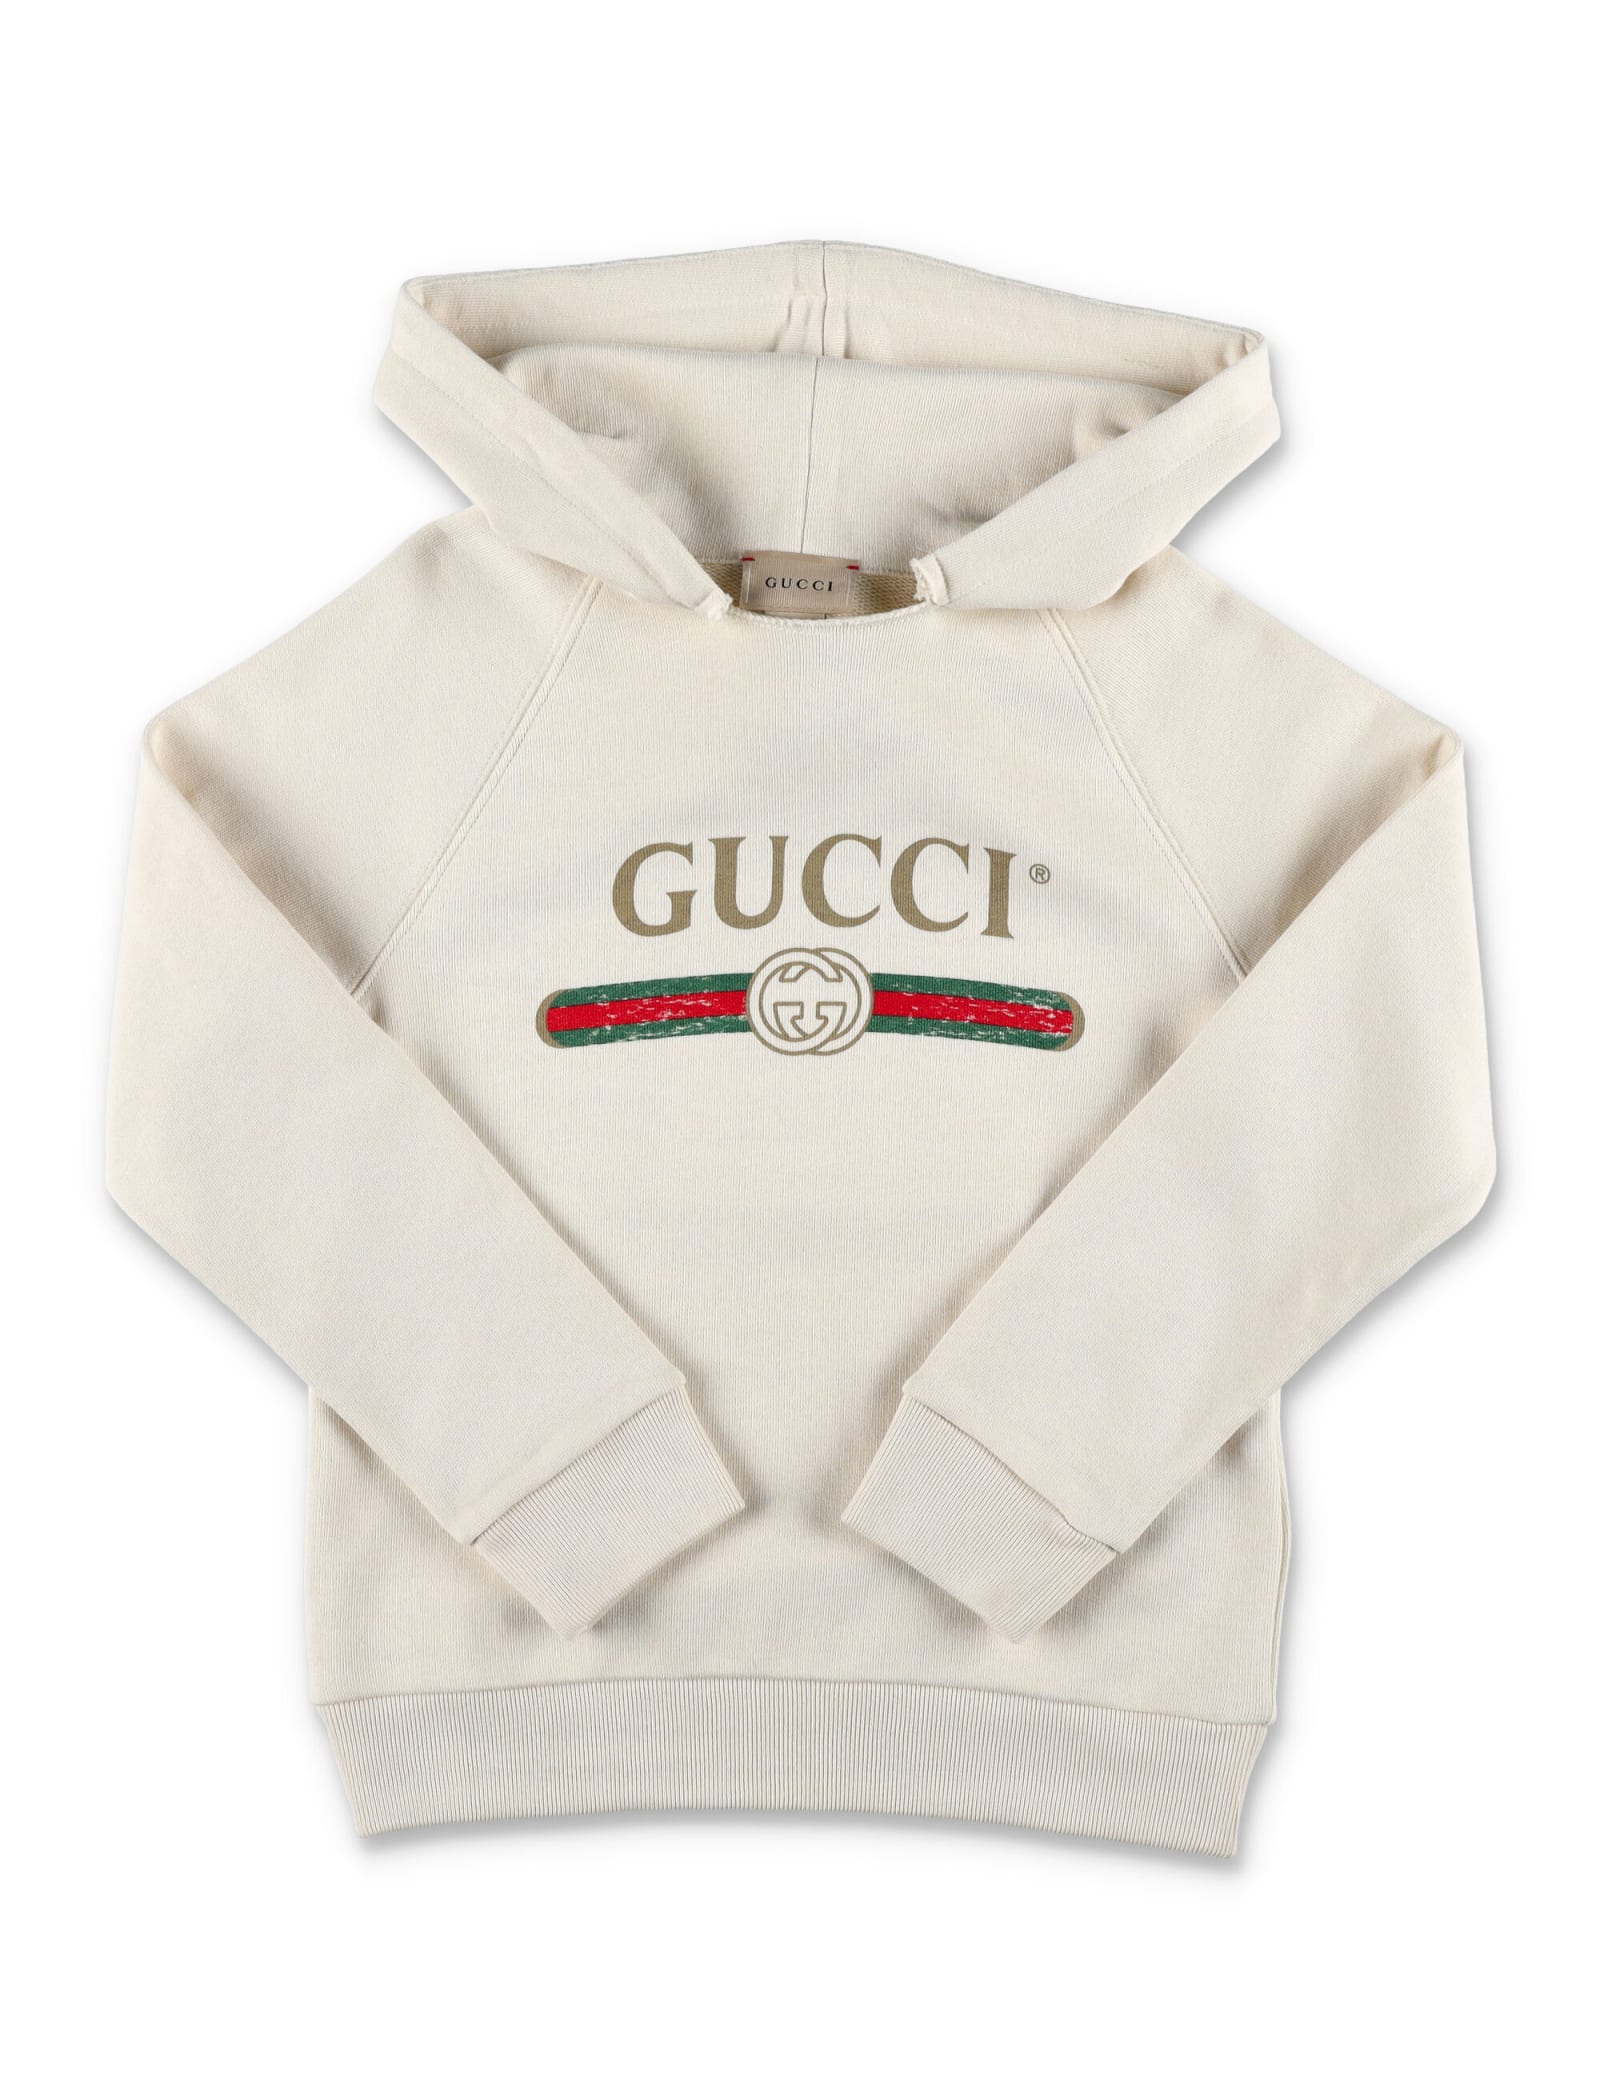 Gucci Logo Hooded Sweatshirt